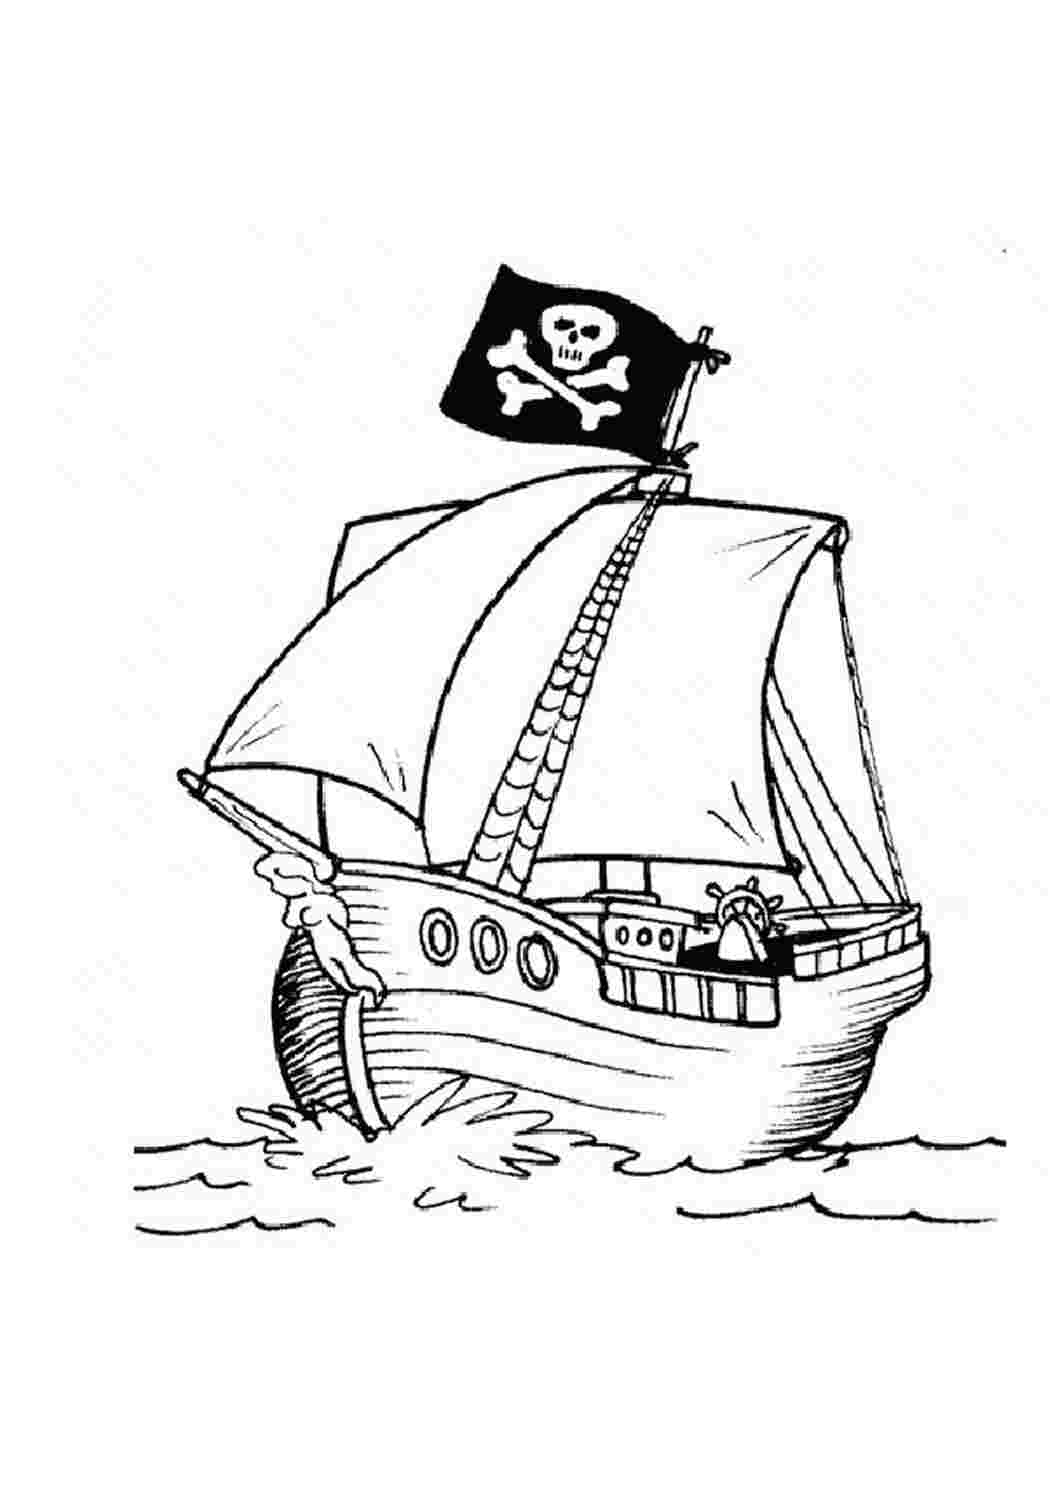 Пиратский корабль рисунок для детей карандашом поэтапно легко